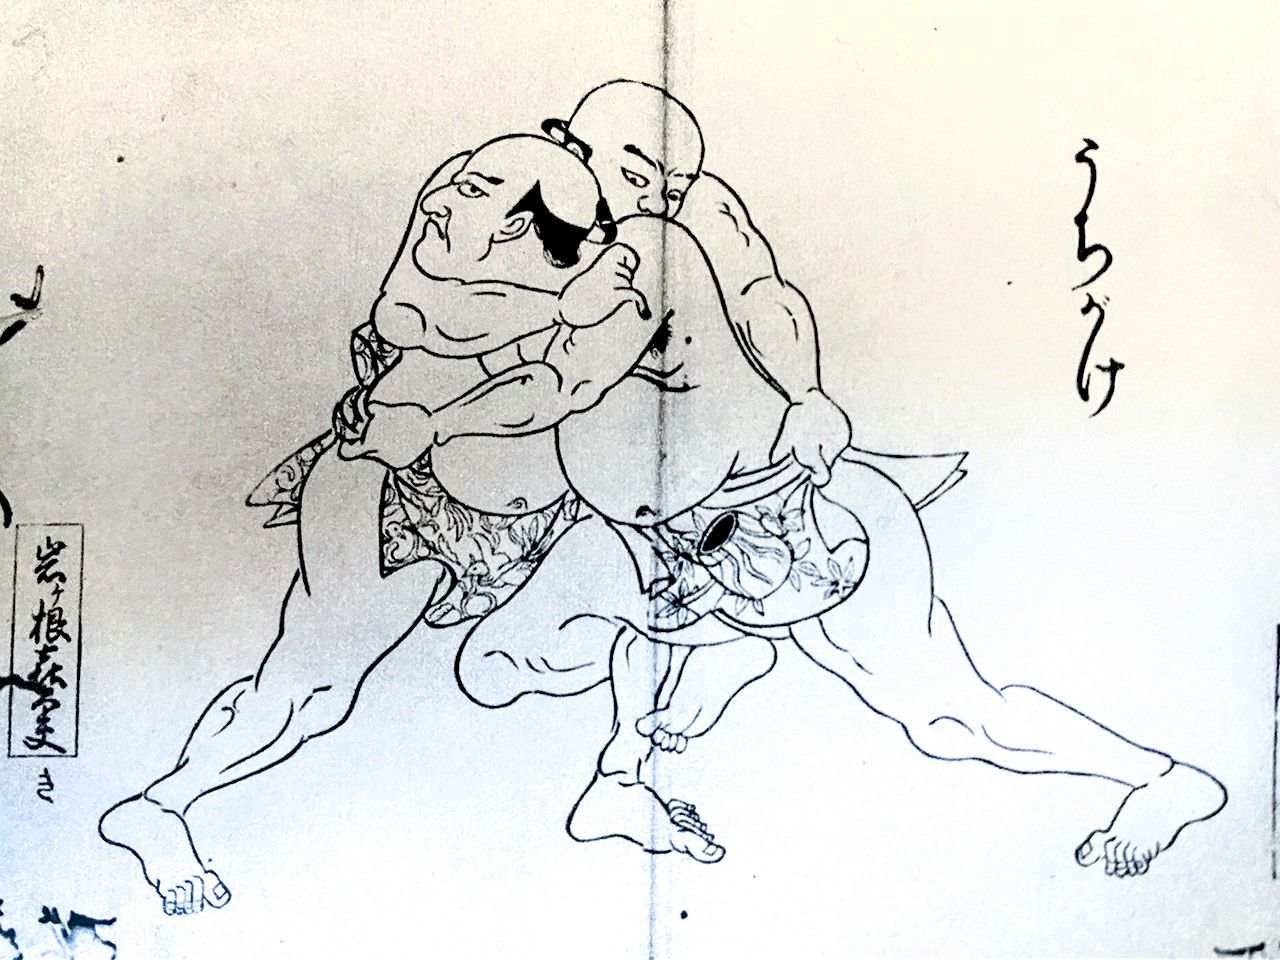 حركة ’’أوتشيغاكي‘‘ التي تتم بإدخال قدم المصارع بين رجلي الخصم وعرقلته، هي إحدى التقنيات الثماني والأربعين للفوز بالمنافسات، من كتاب يعود لفترة إيدو (بإذن من مجلة أوزومو).